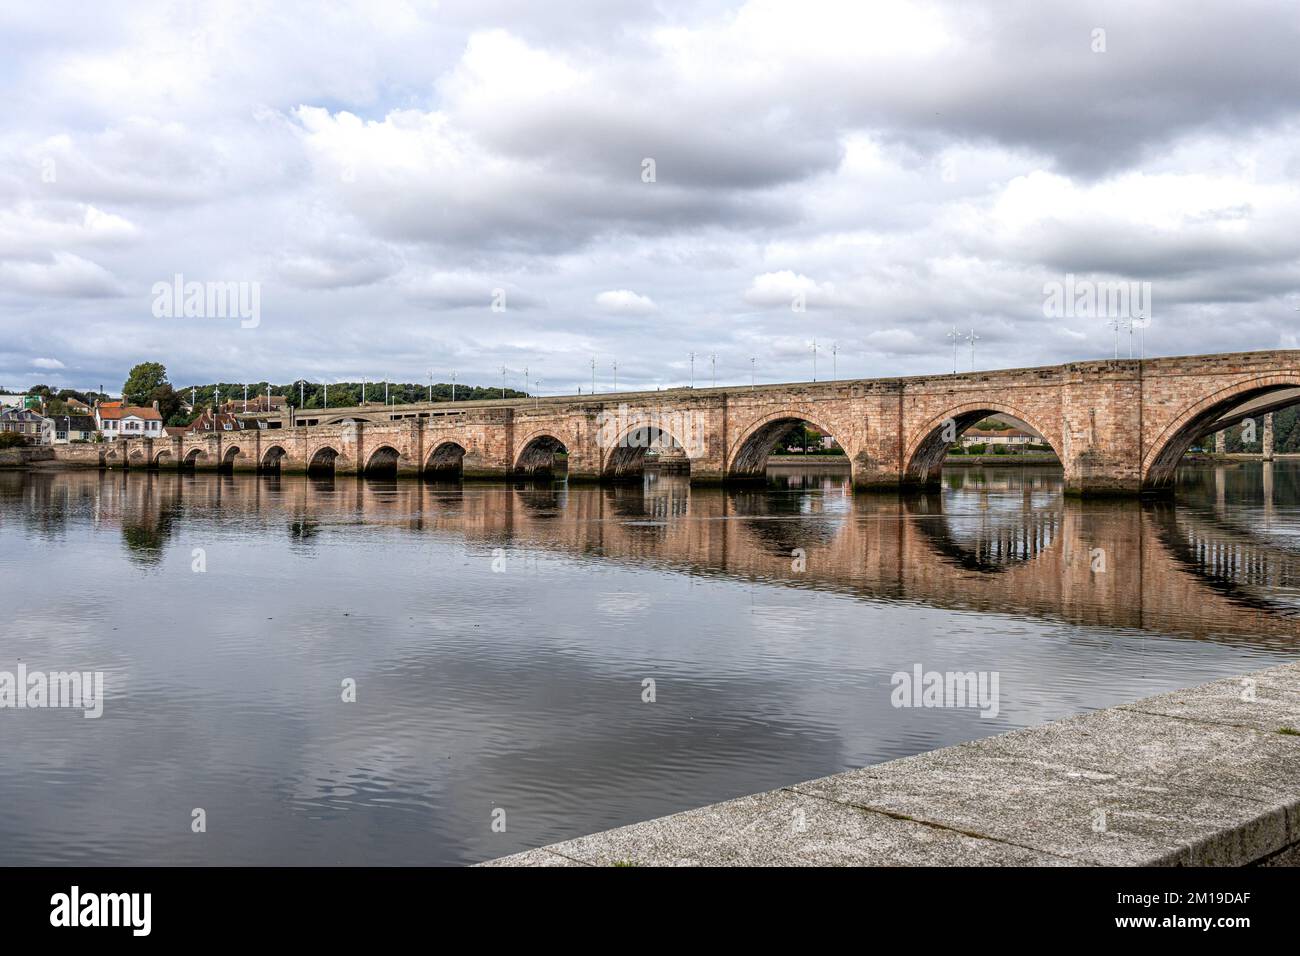 Les trois ponts de Berwick upon Tweed, le vieux pont, le nouveau pont et le pont frontalier royal au-dessus de la rivière Tweed Banque D'Images